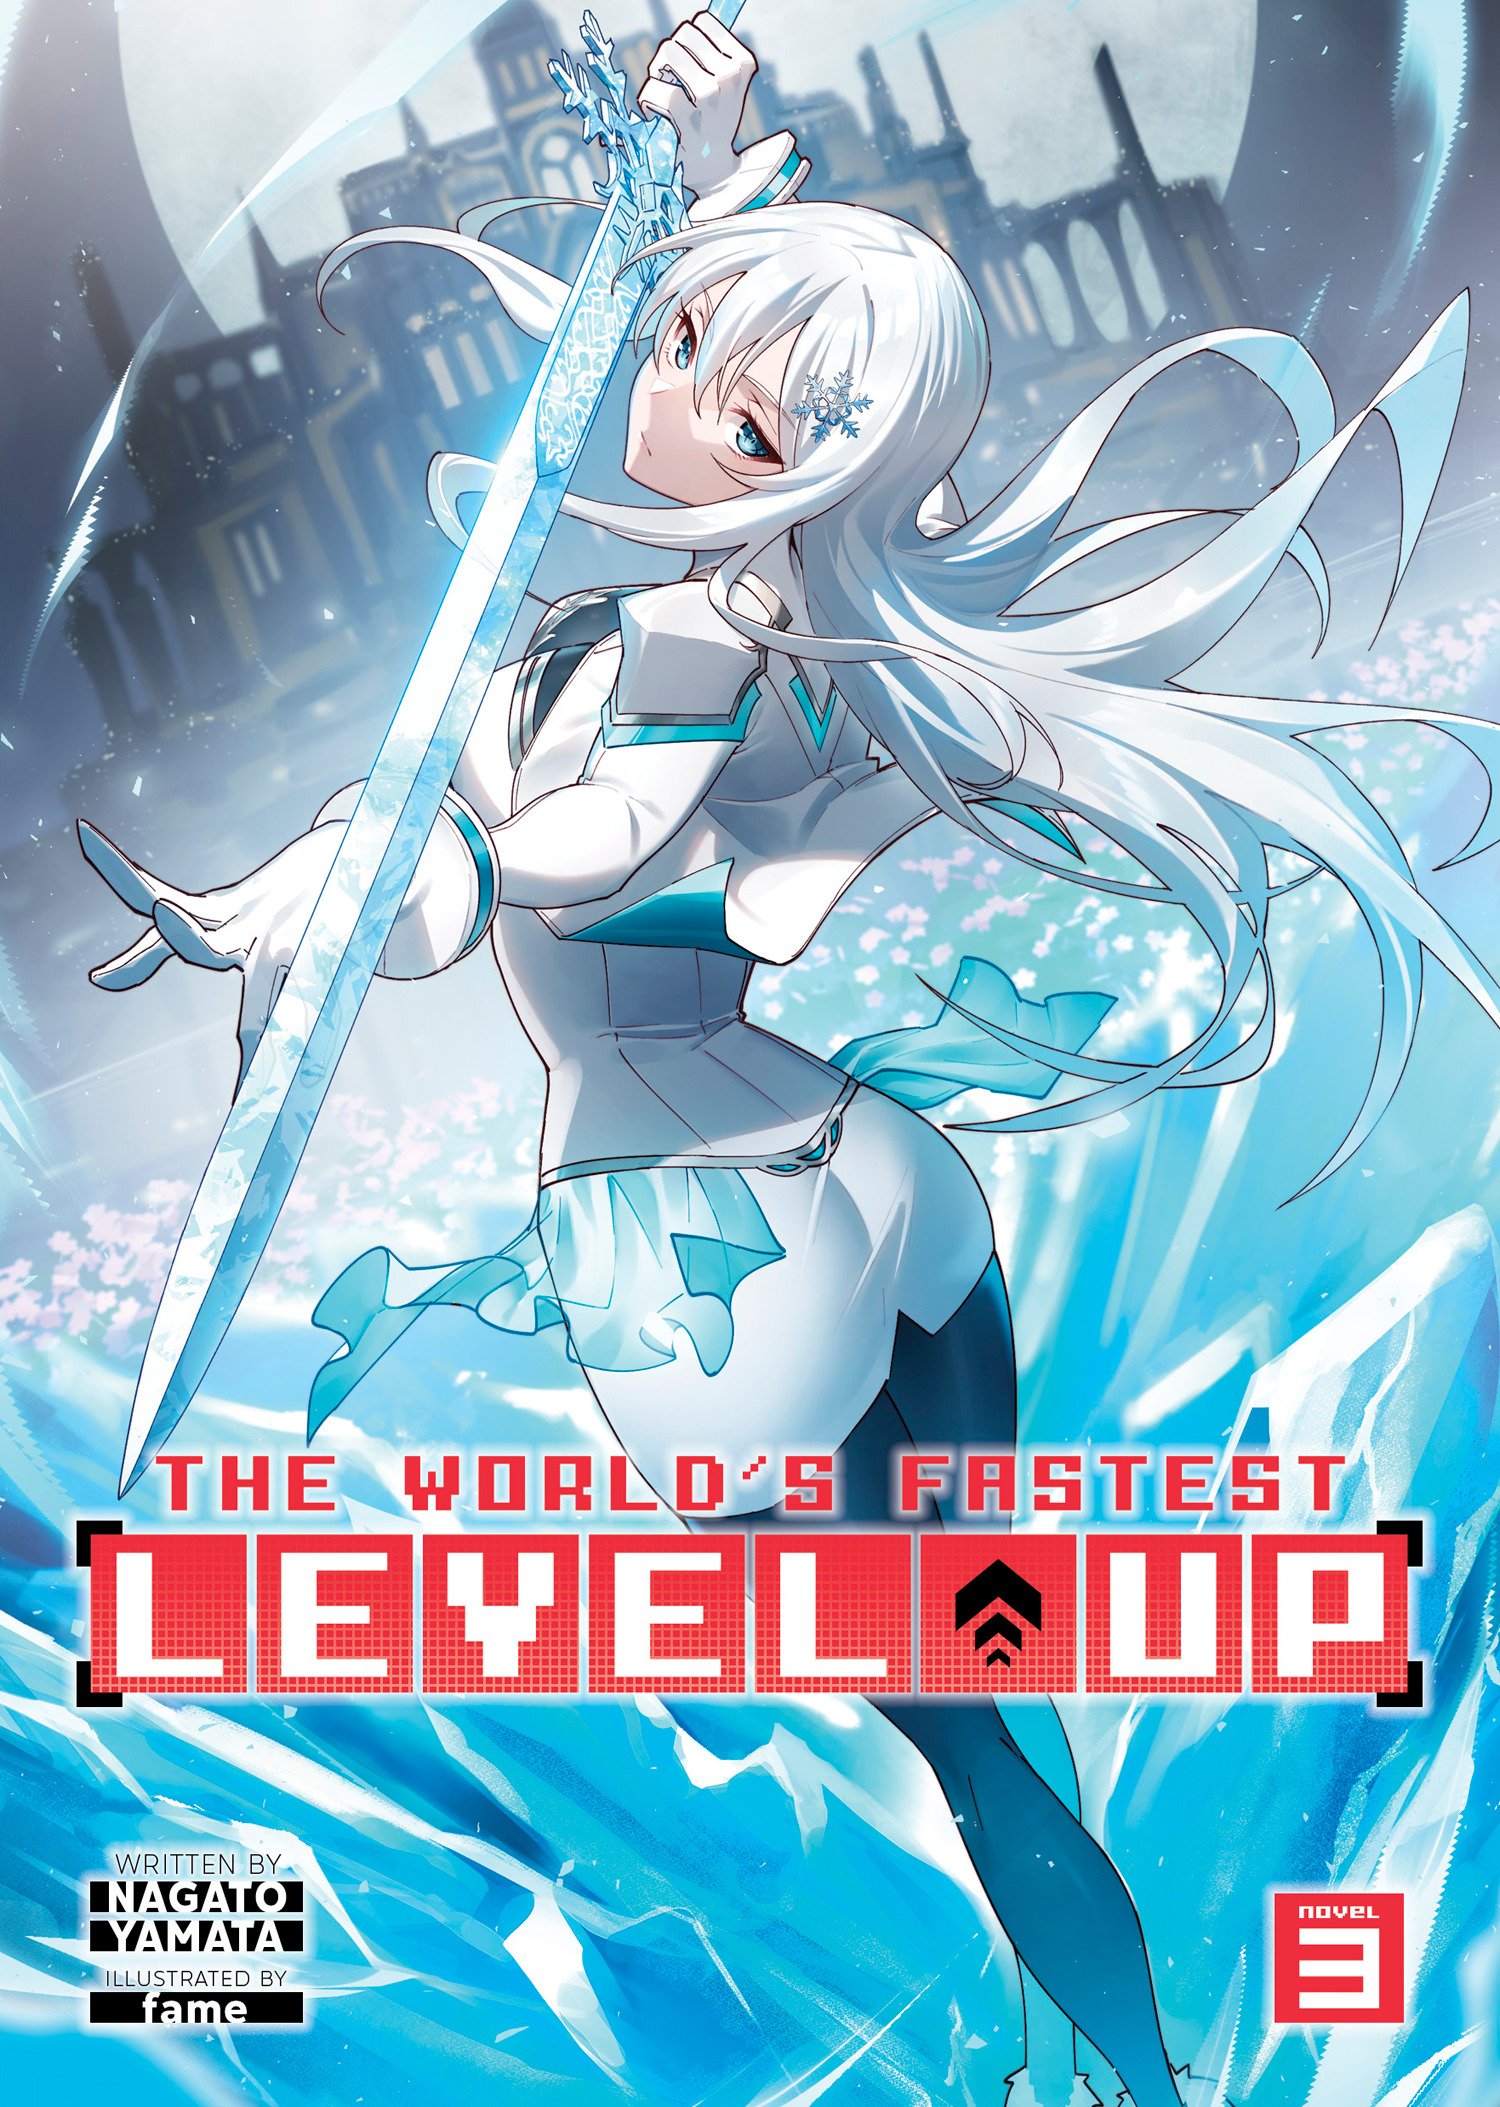 World's Fastest Level Up! Light Novel Volume 3